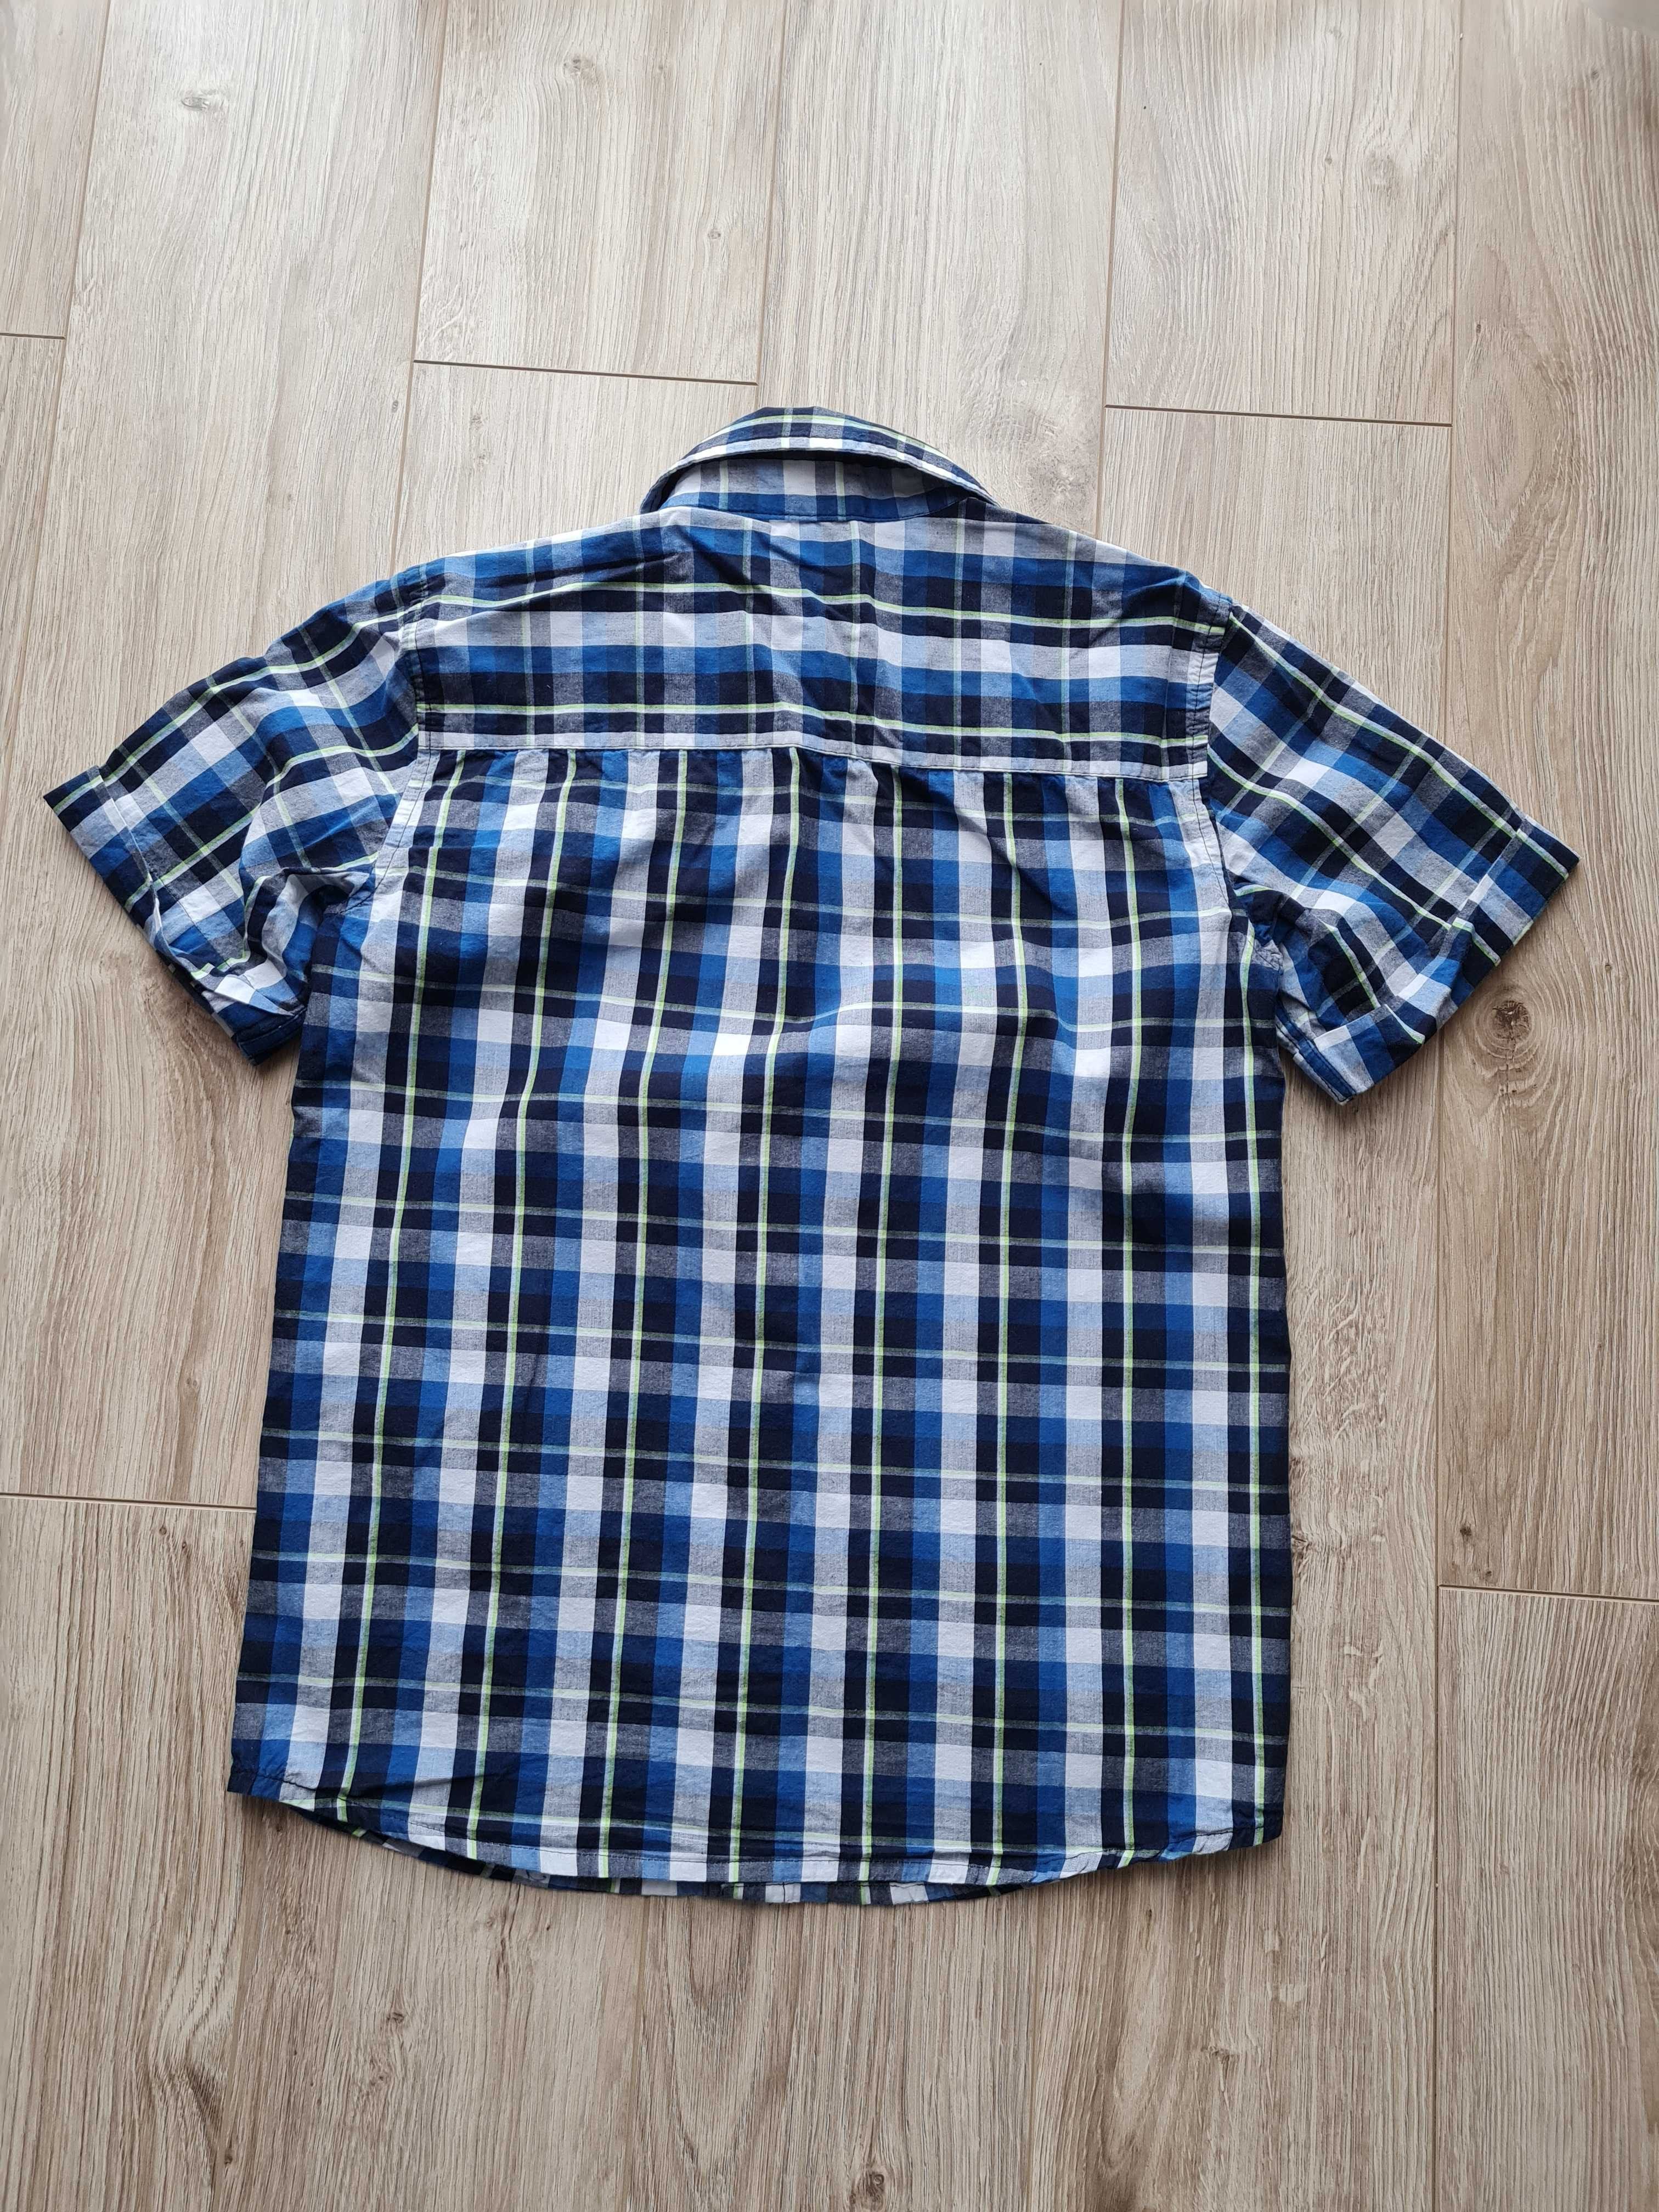 Koszula chłopięca na krótki rękaw rozmiar 152